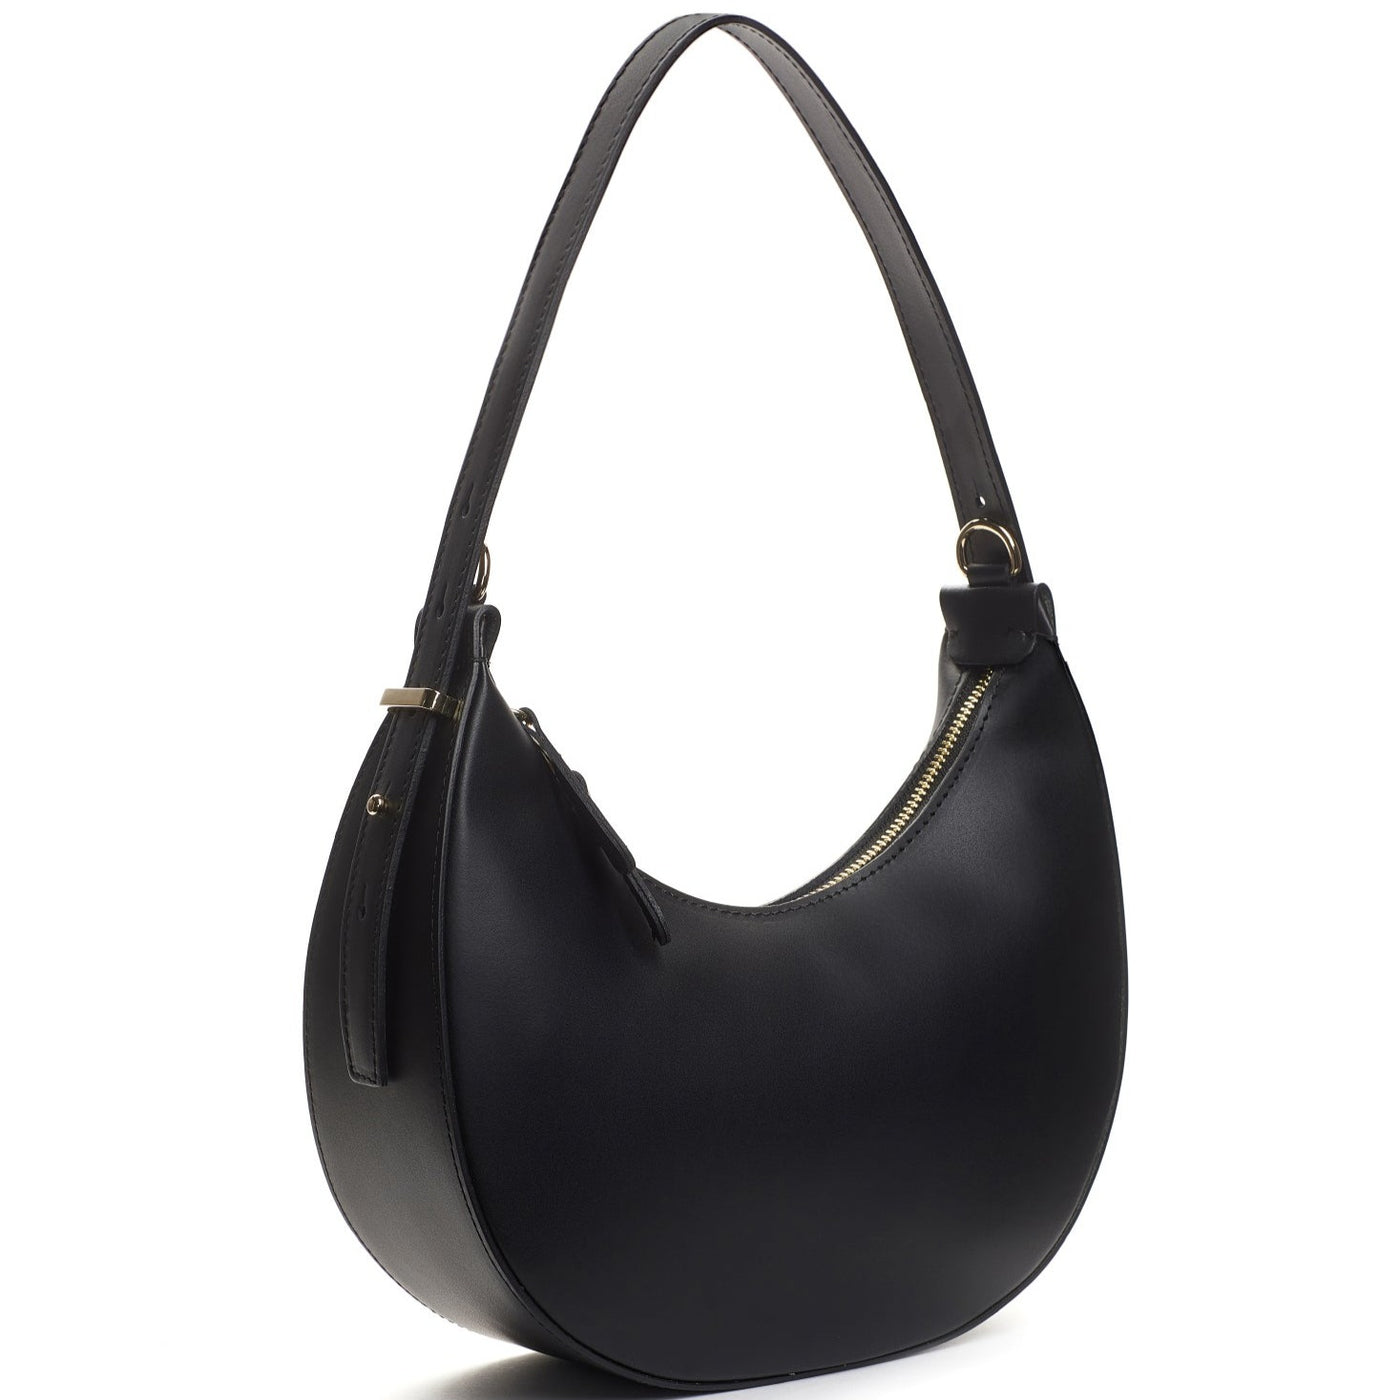 Leather bag "Luna", Black